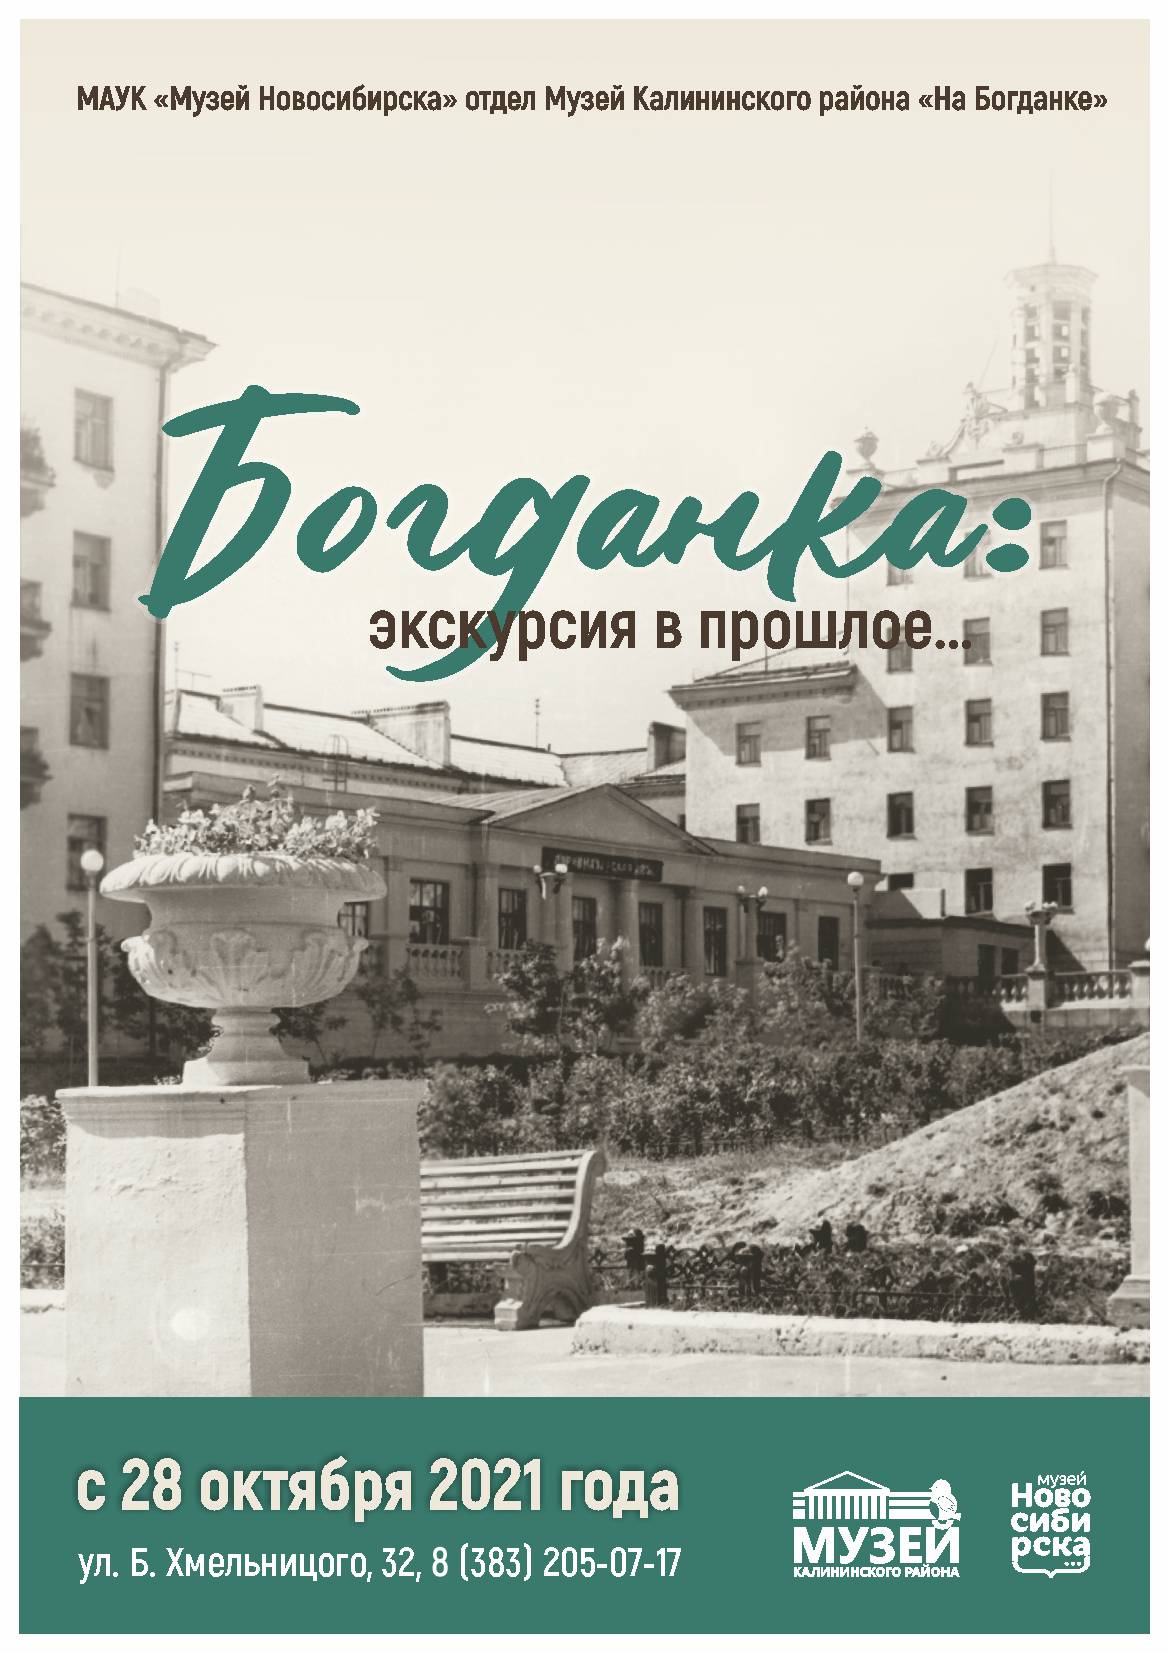 Богданка: экскурсия в прошлое